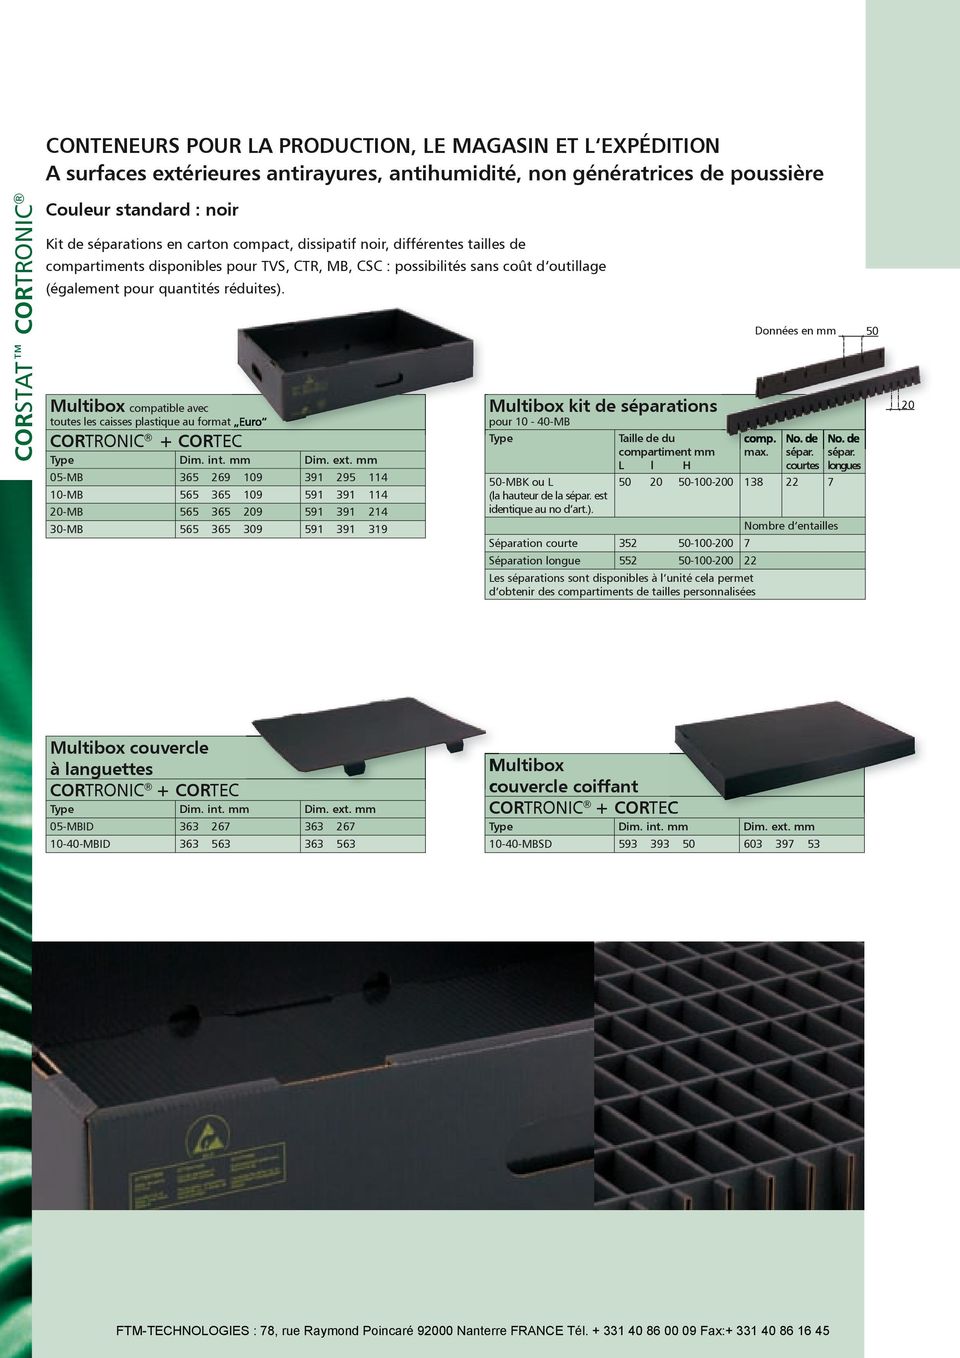 Multibox compatible avec toutes les caisses plastique au format Euro CORTRONIC + CORTEC Dim. ext.